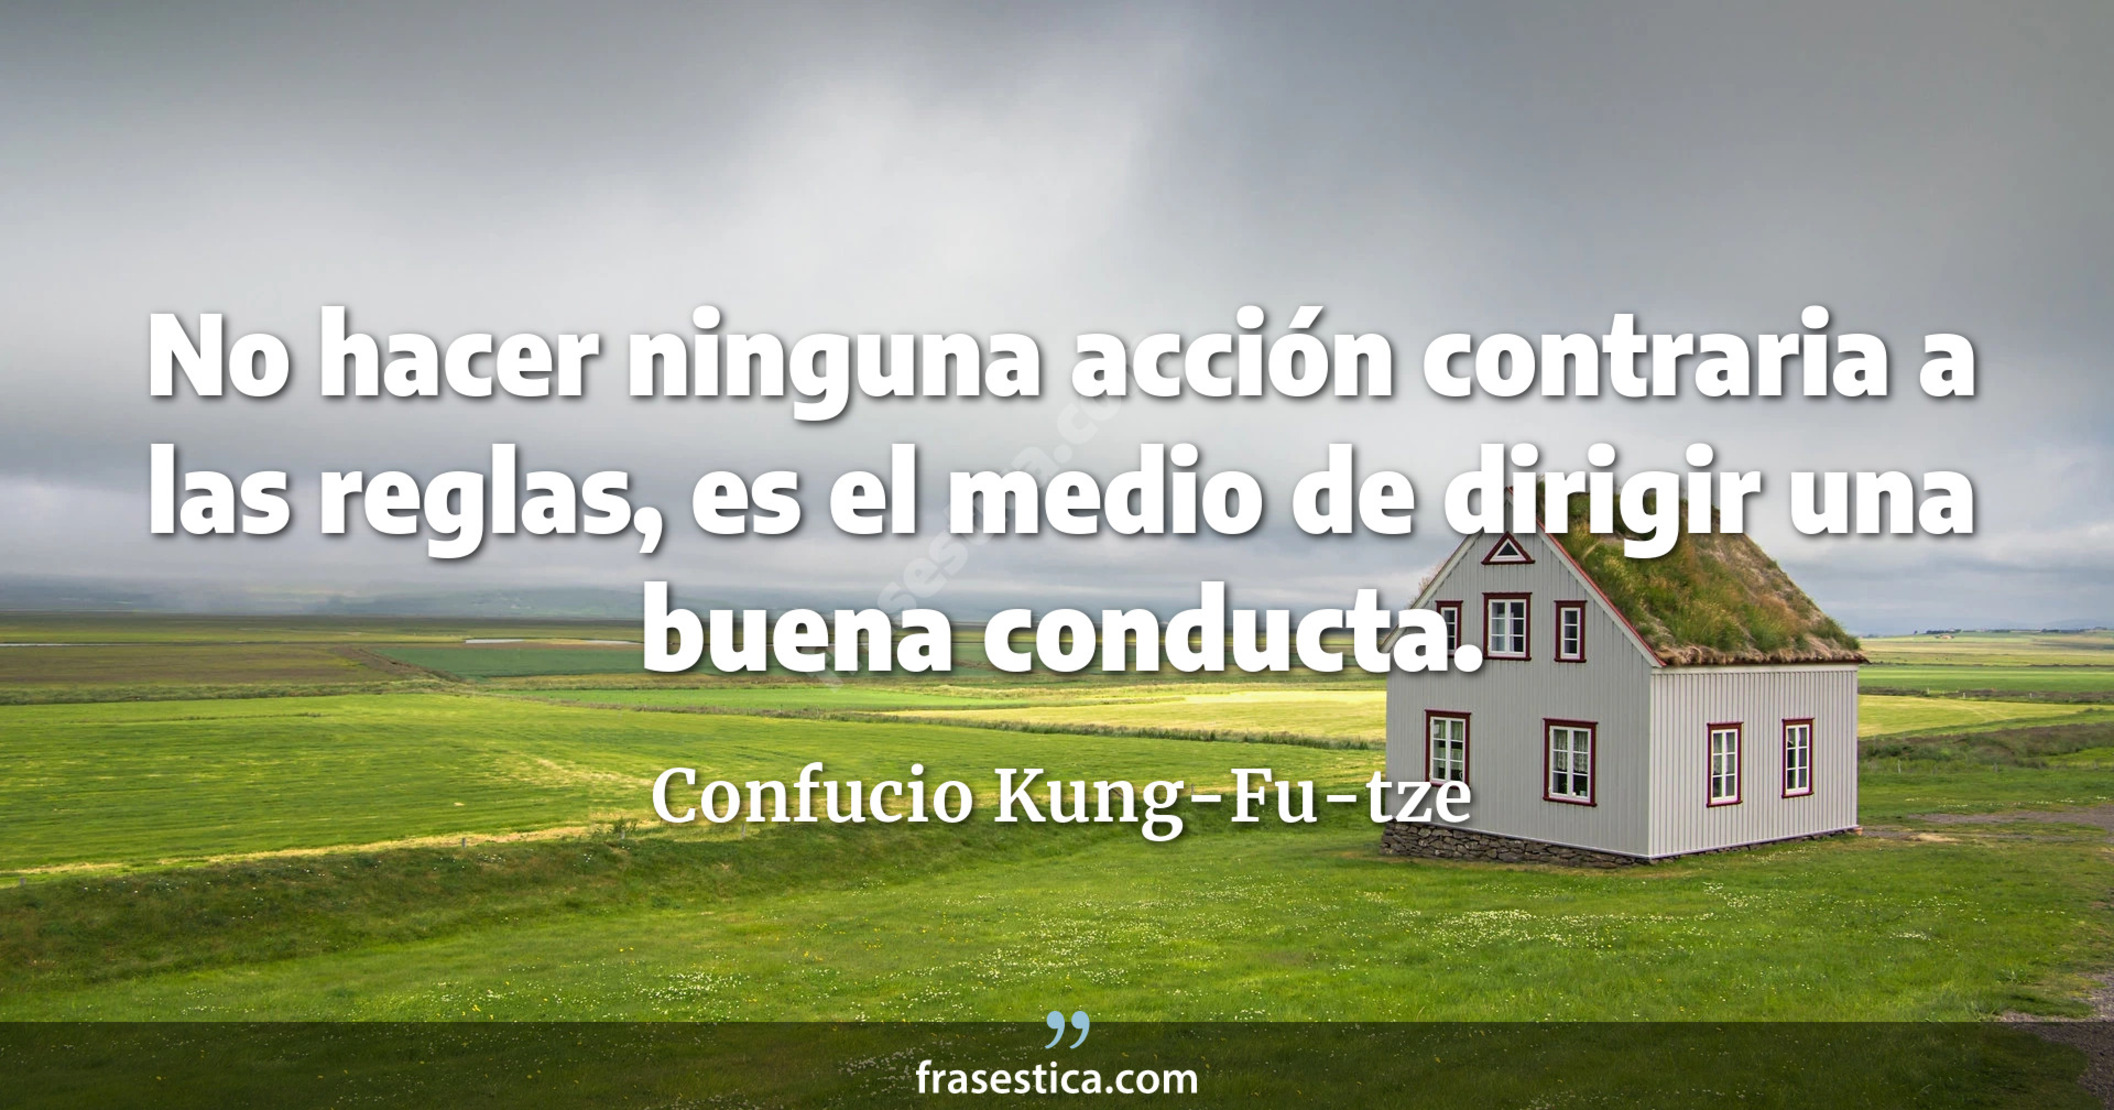 No hacer ninguna acción contraria a las reglas, es el medio de dirigir una buena conducta. - Confucio Kung-Fu-tze